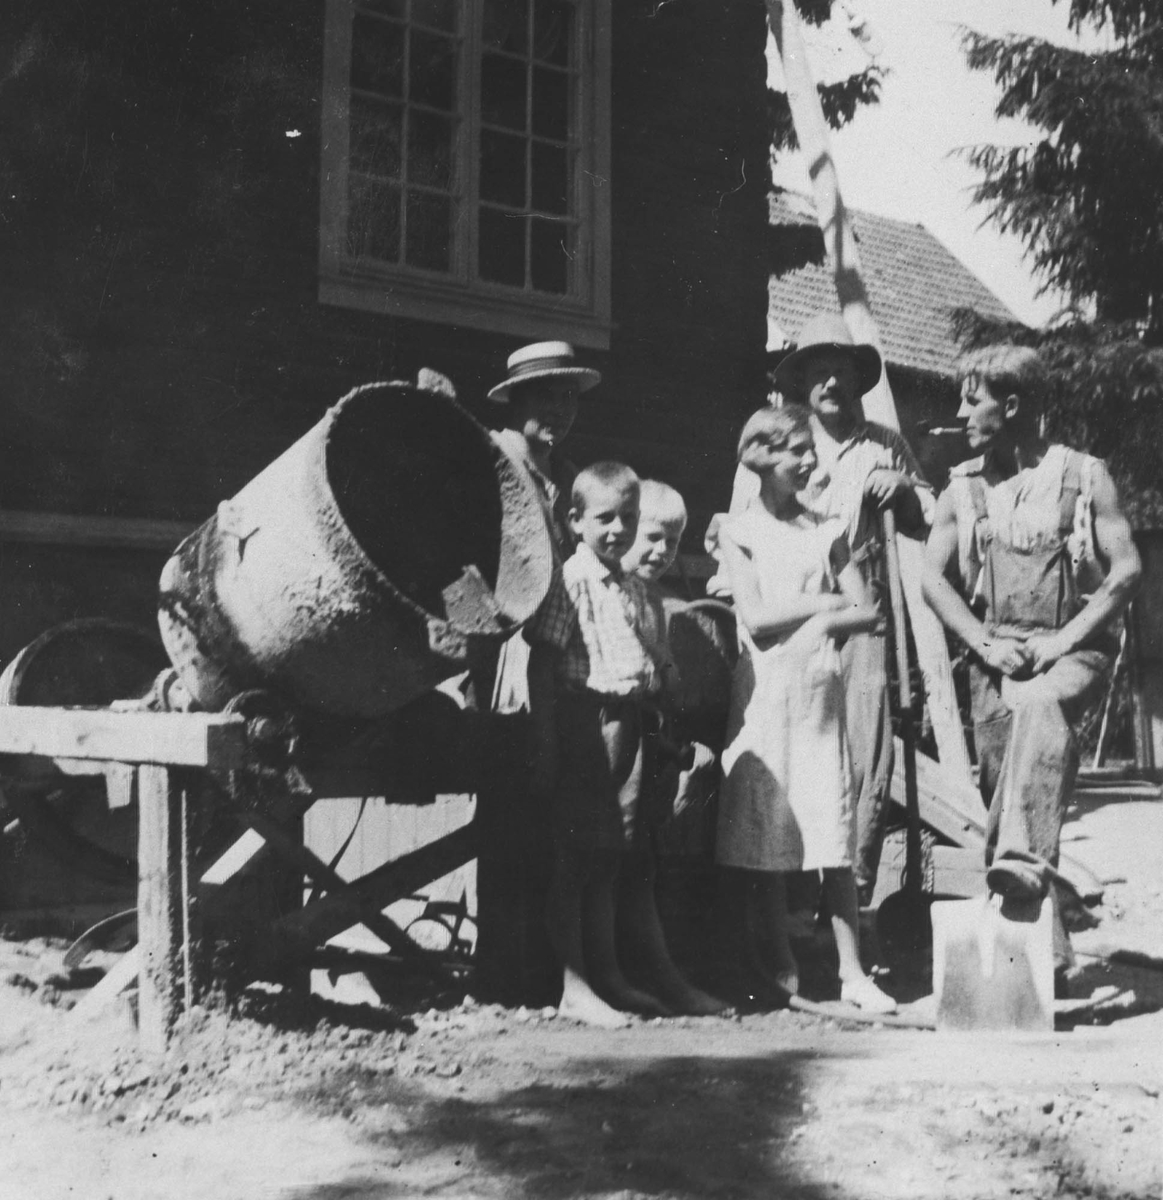 Tre voksne og tre barn ved en sementblander.Bildet er tatt foran kjemi- eller fabrikkbygning.